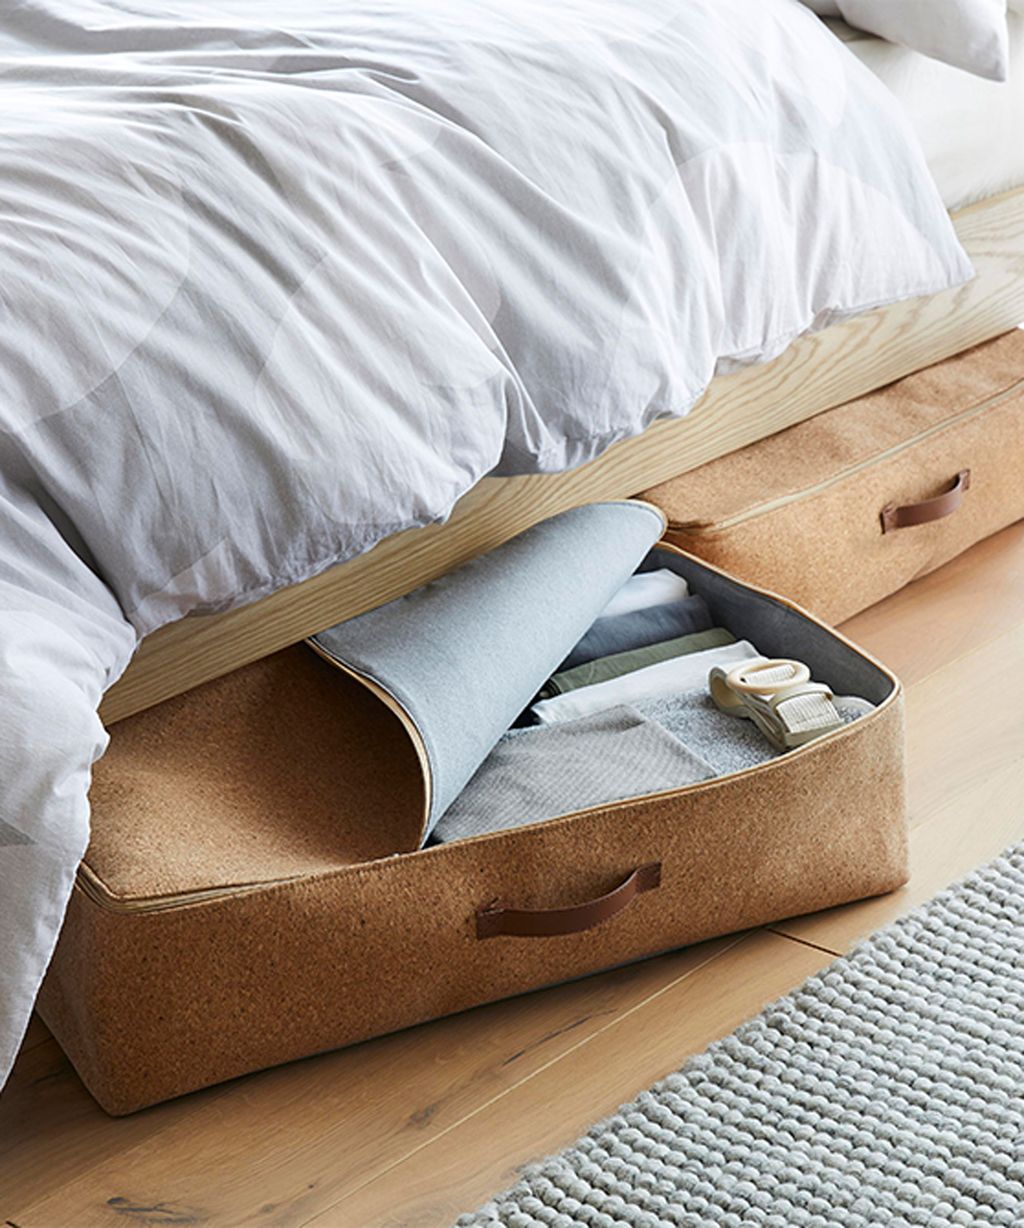 Underbed storage ideas 11 ways to store under a bed